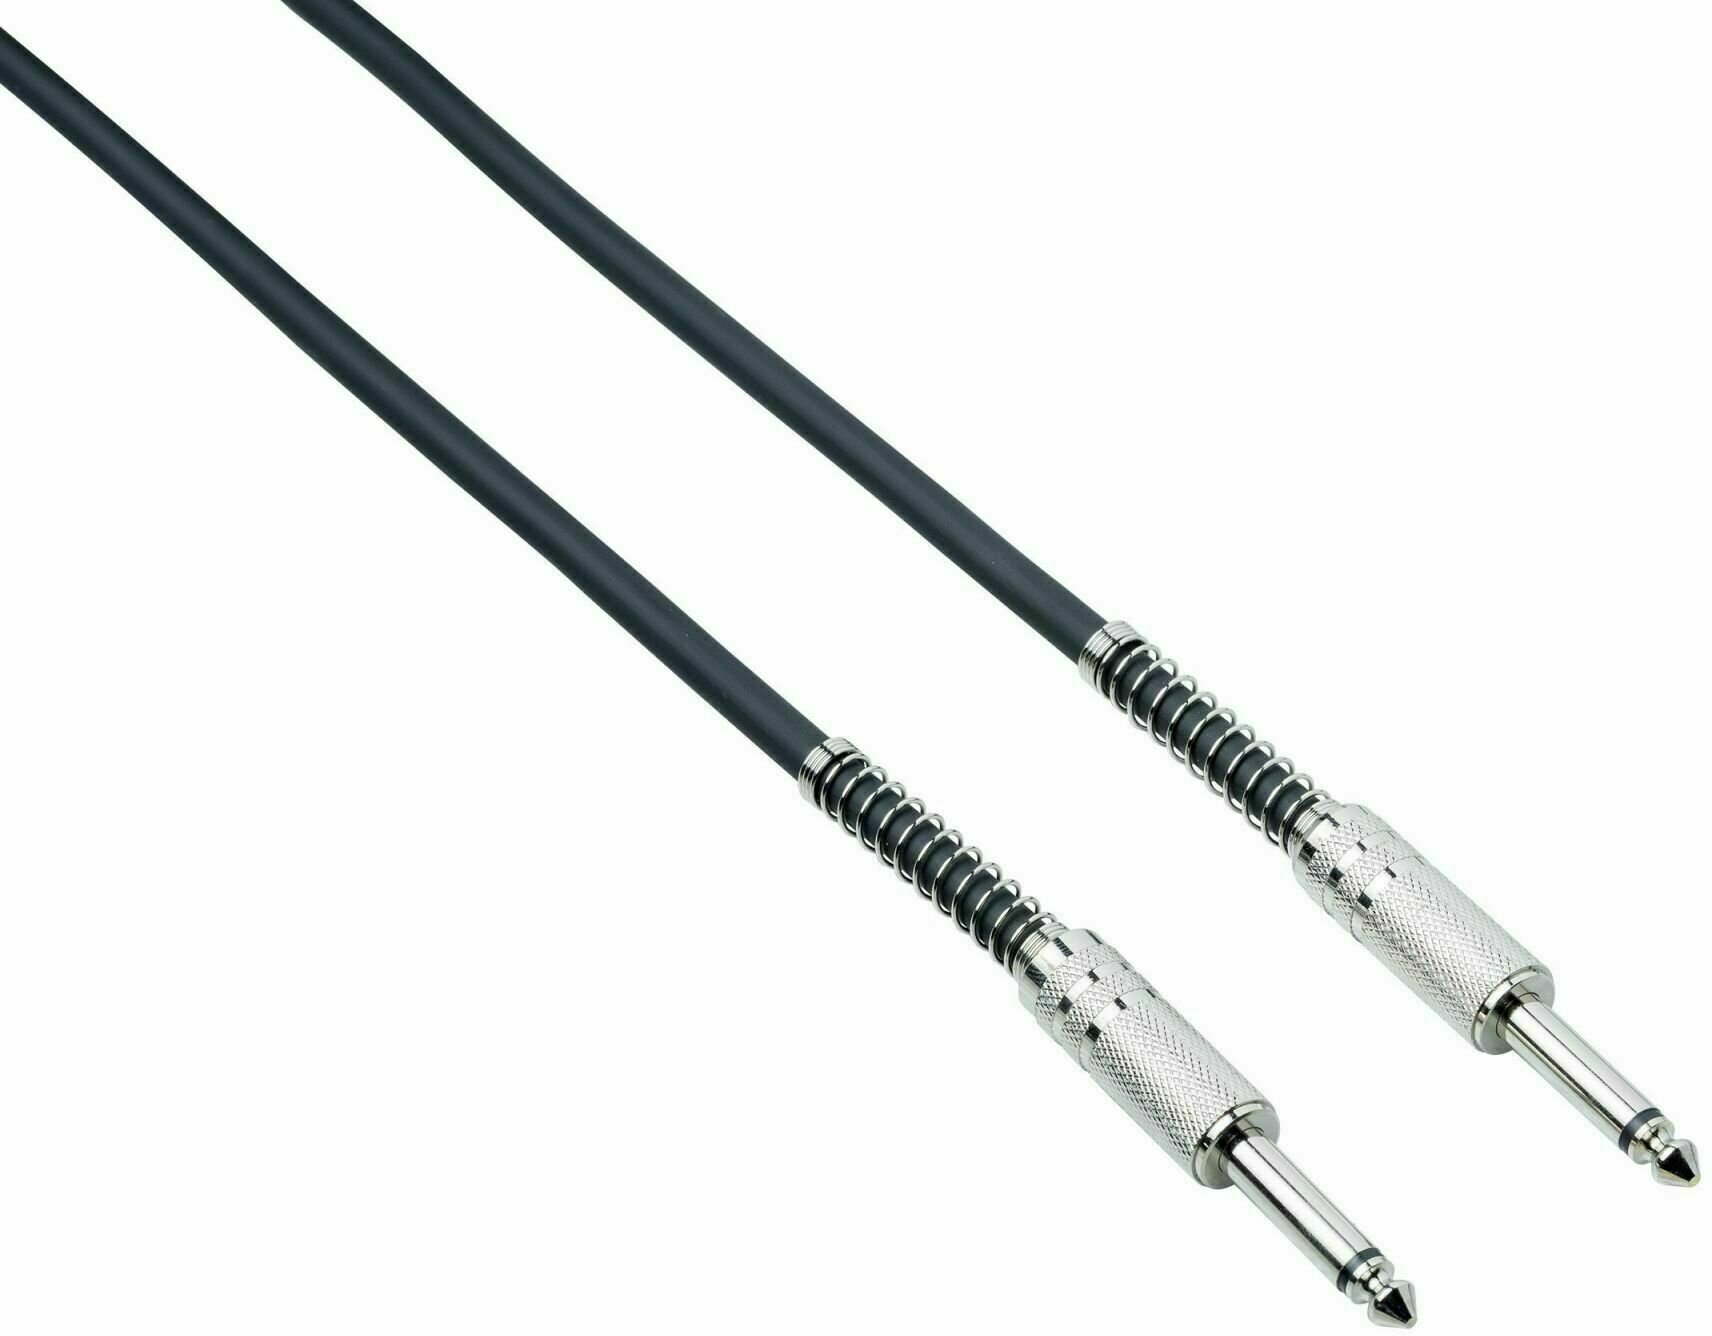 Povezovalni kabel, patch kabel Bespeco IRO 50 Črna 50 cm Ravni - Ravni